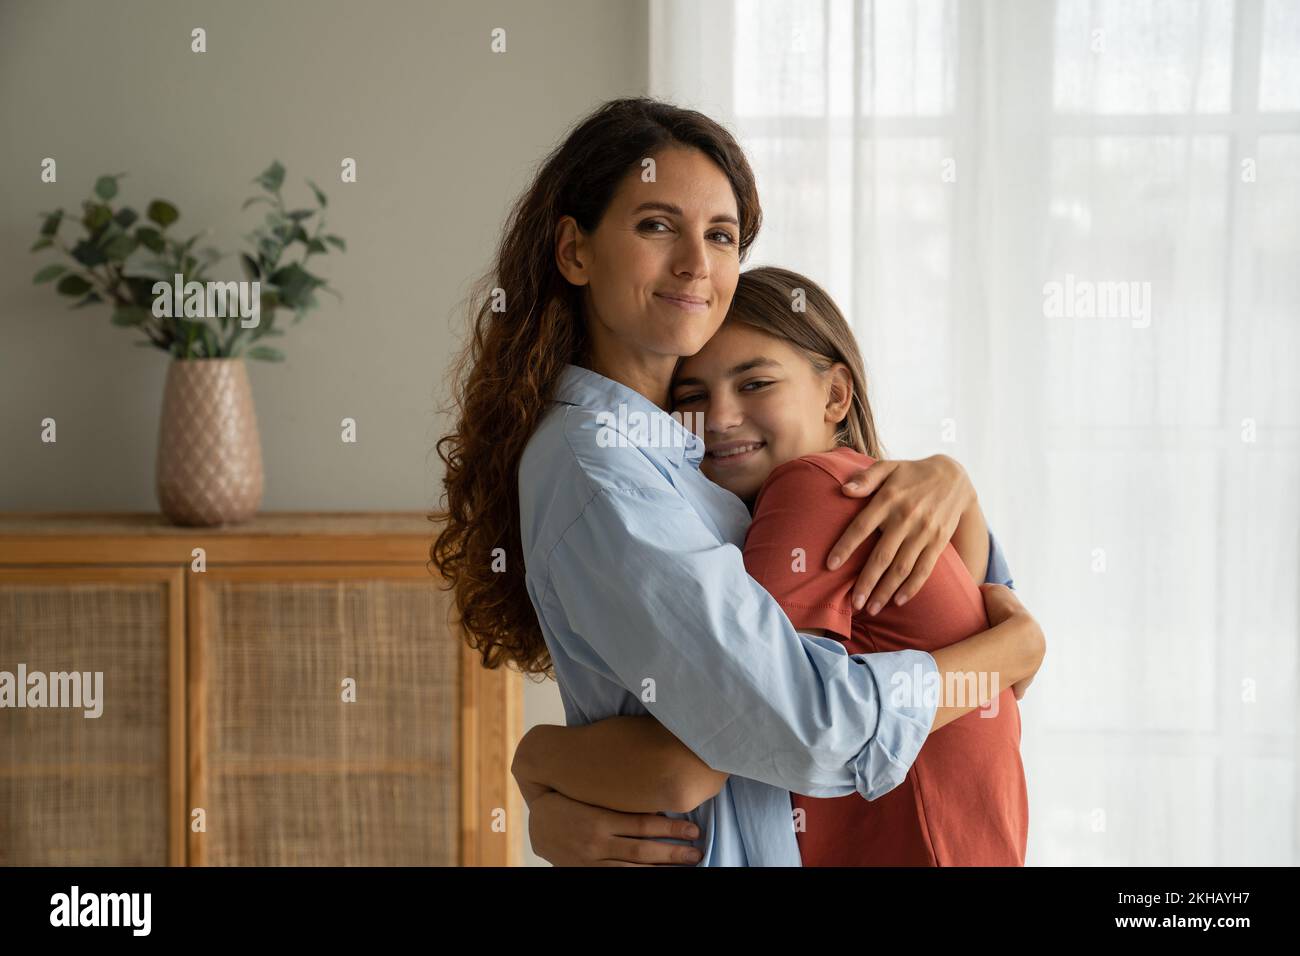 Gentile ottimista donna spagnola abbracciando sorridente ragazza adolescente che accetta congratulazioni per il giorno della madre Foto Stock